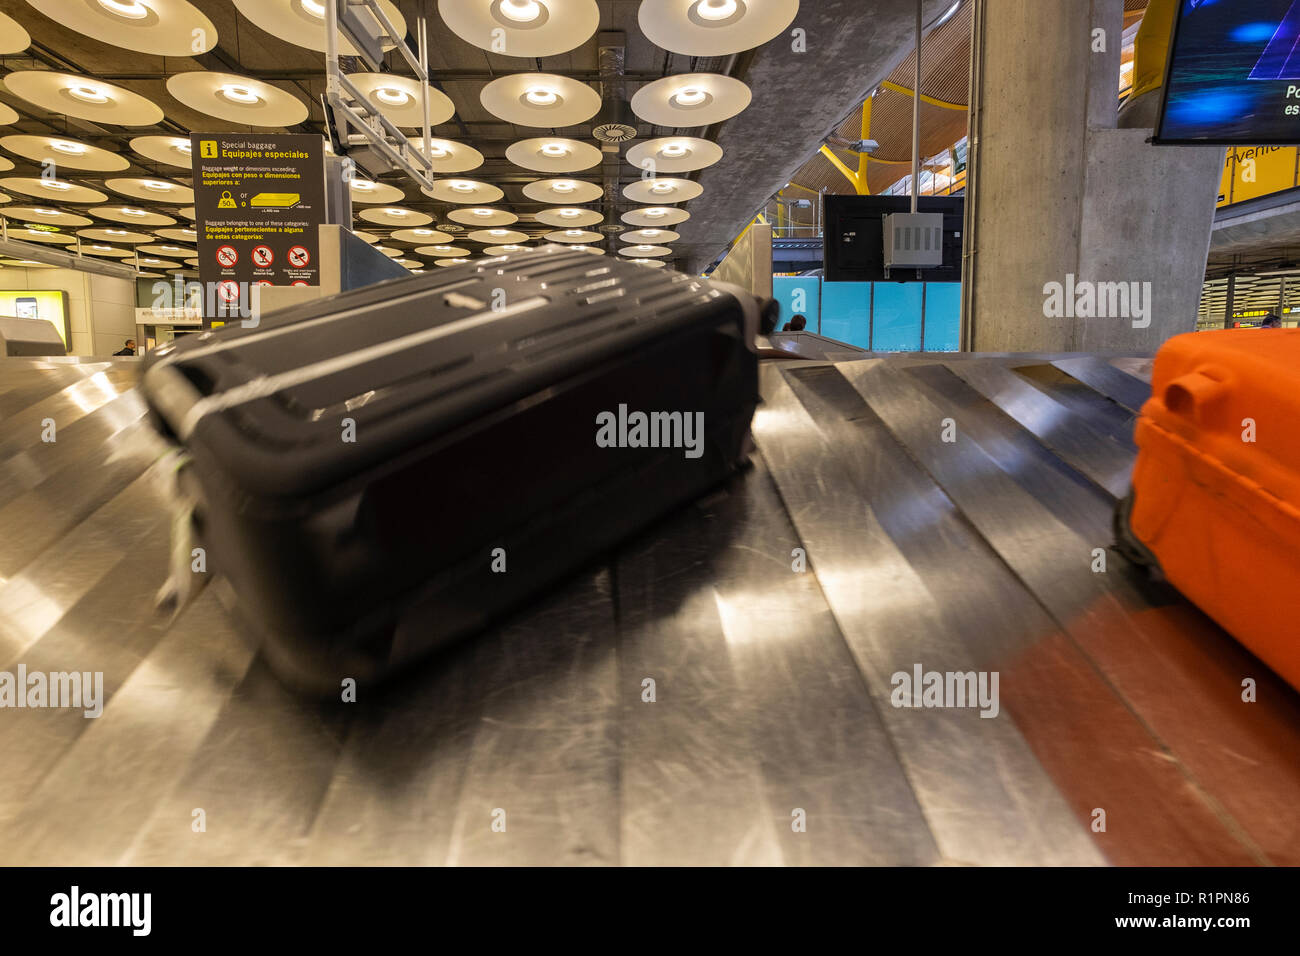 Las maletas en la cinta transportadora, en la zona de recogida de equipajes en la sala de llegadas a Adolfo Suares, el aeropuerto de Barajas de Madrid, España Fotografía de stock -